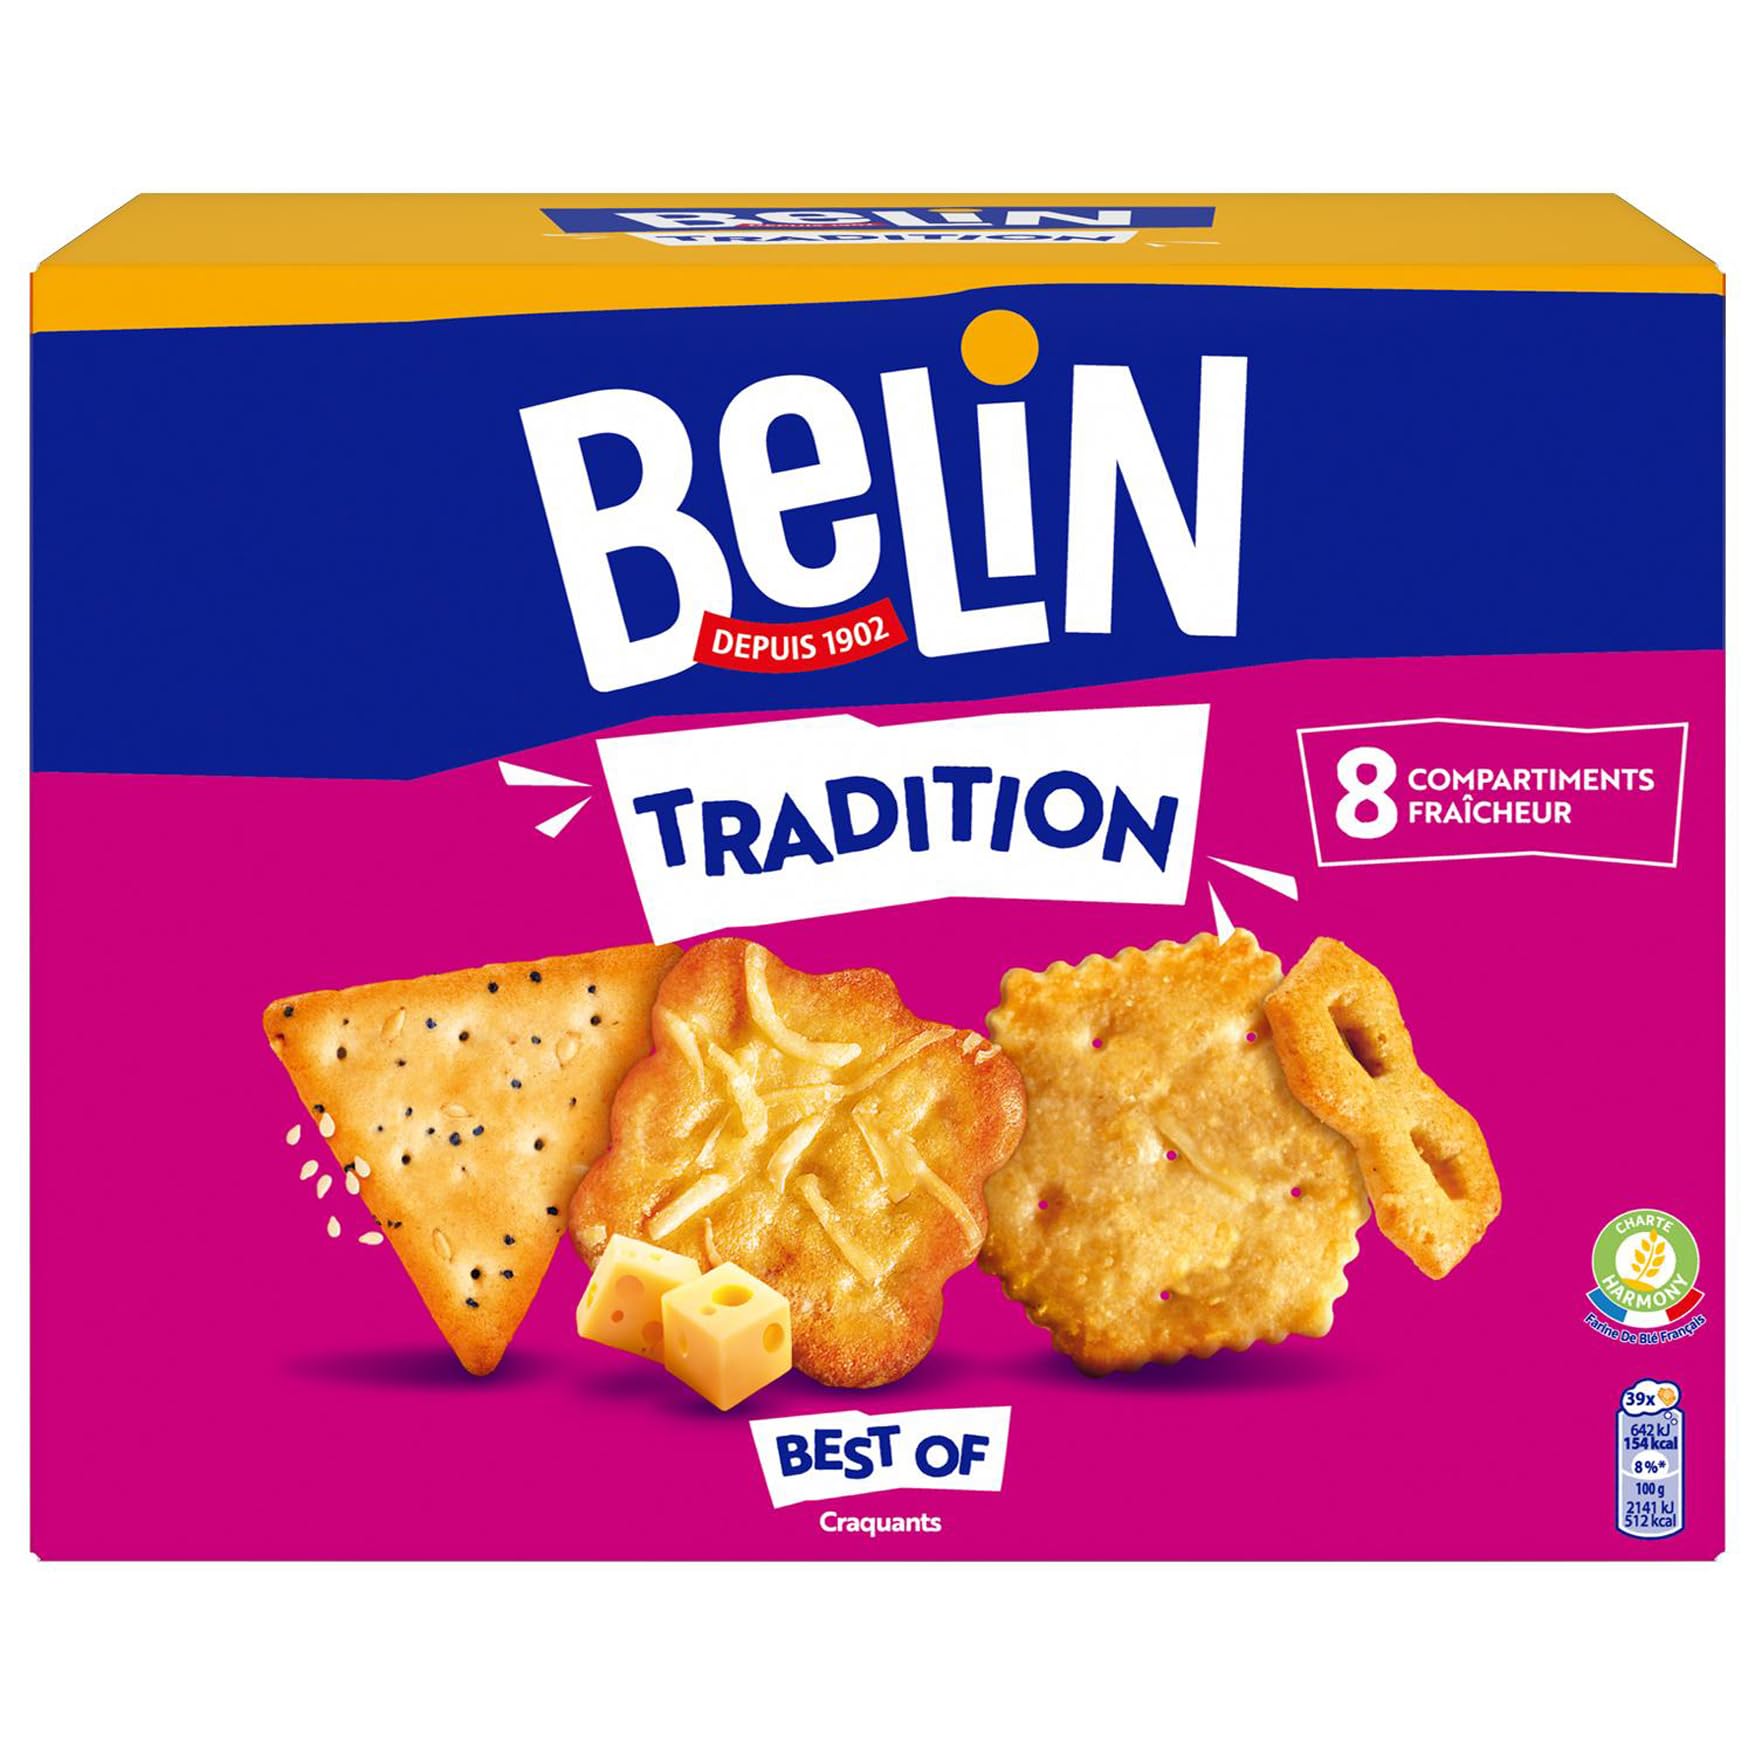 en vente Belin Tradition - Assortiment de Biscuits - Crackers Monaco à l’Emmental, Crackers Best of extra-fins - Mélange de 2 Variétés - 720 g VQ0wXQO8M mode